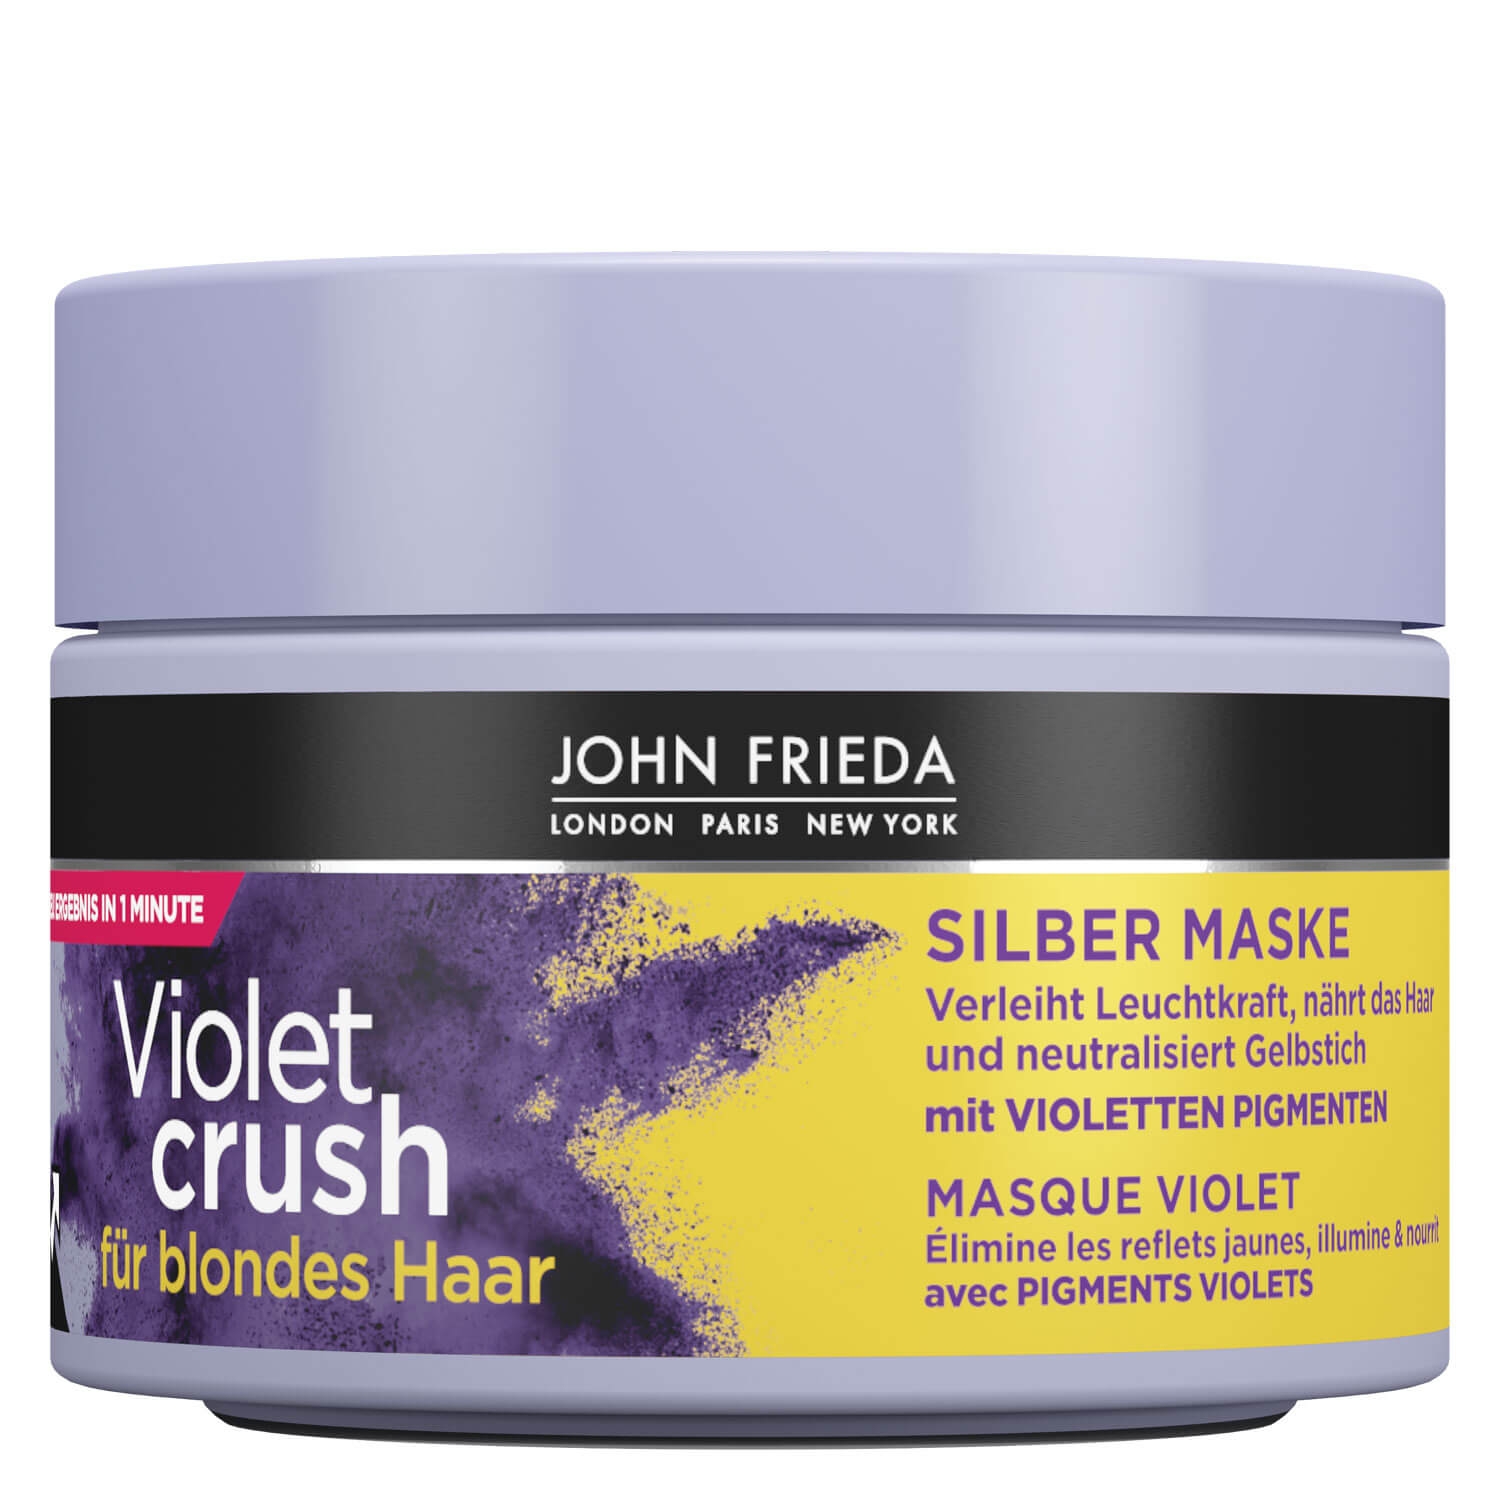 Produktbild von Sheer Blonde - Violet Crush Silber Maske